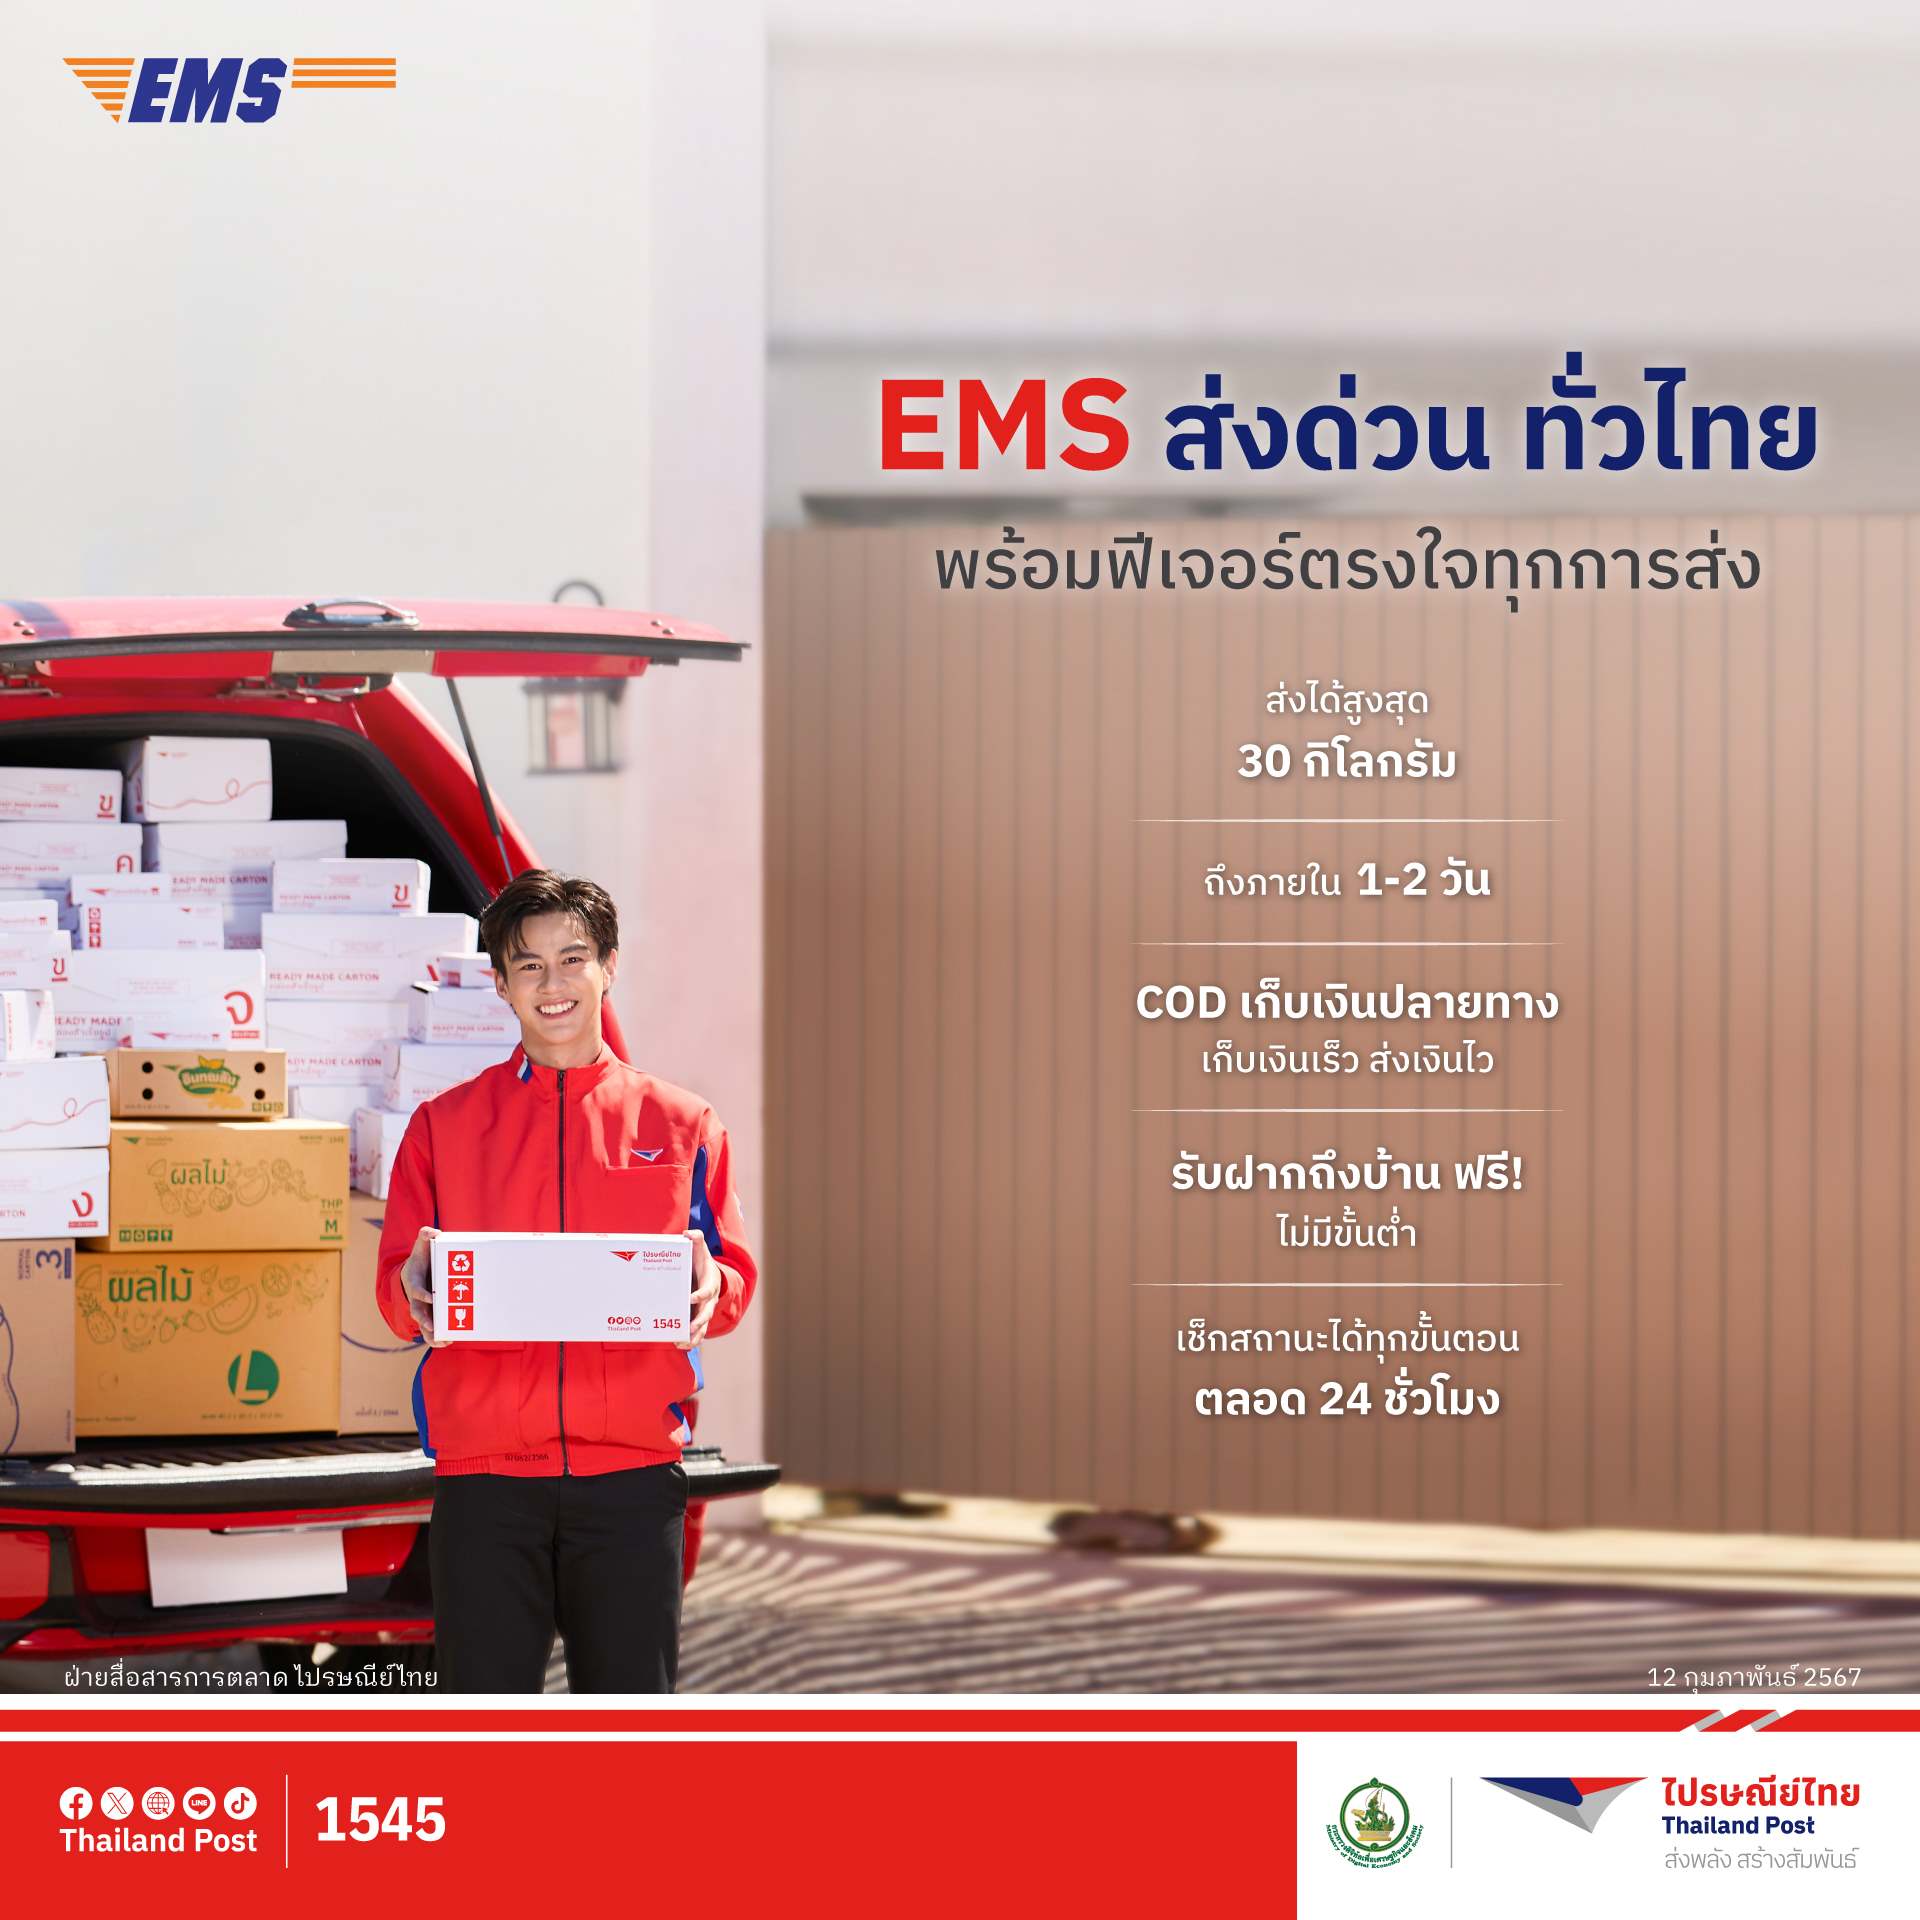 ตอกย้ำความวางใจ ส่งของกับไปรษณีย์โตพุ่งสูง 26% ชู 'EMS ส่งด่วน ทั่วไทย'